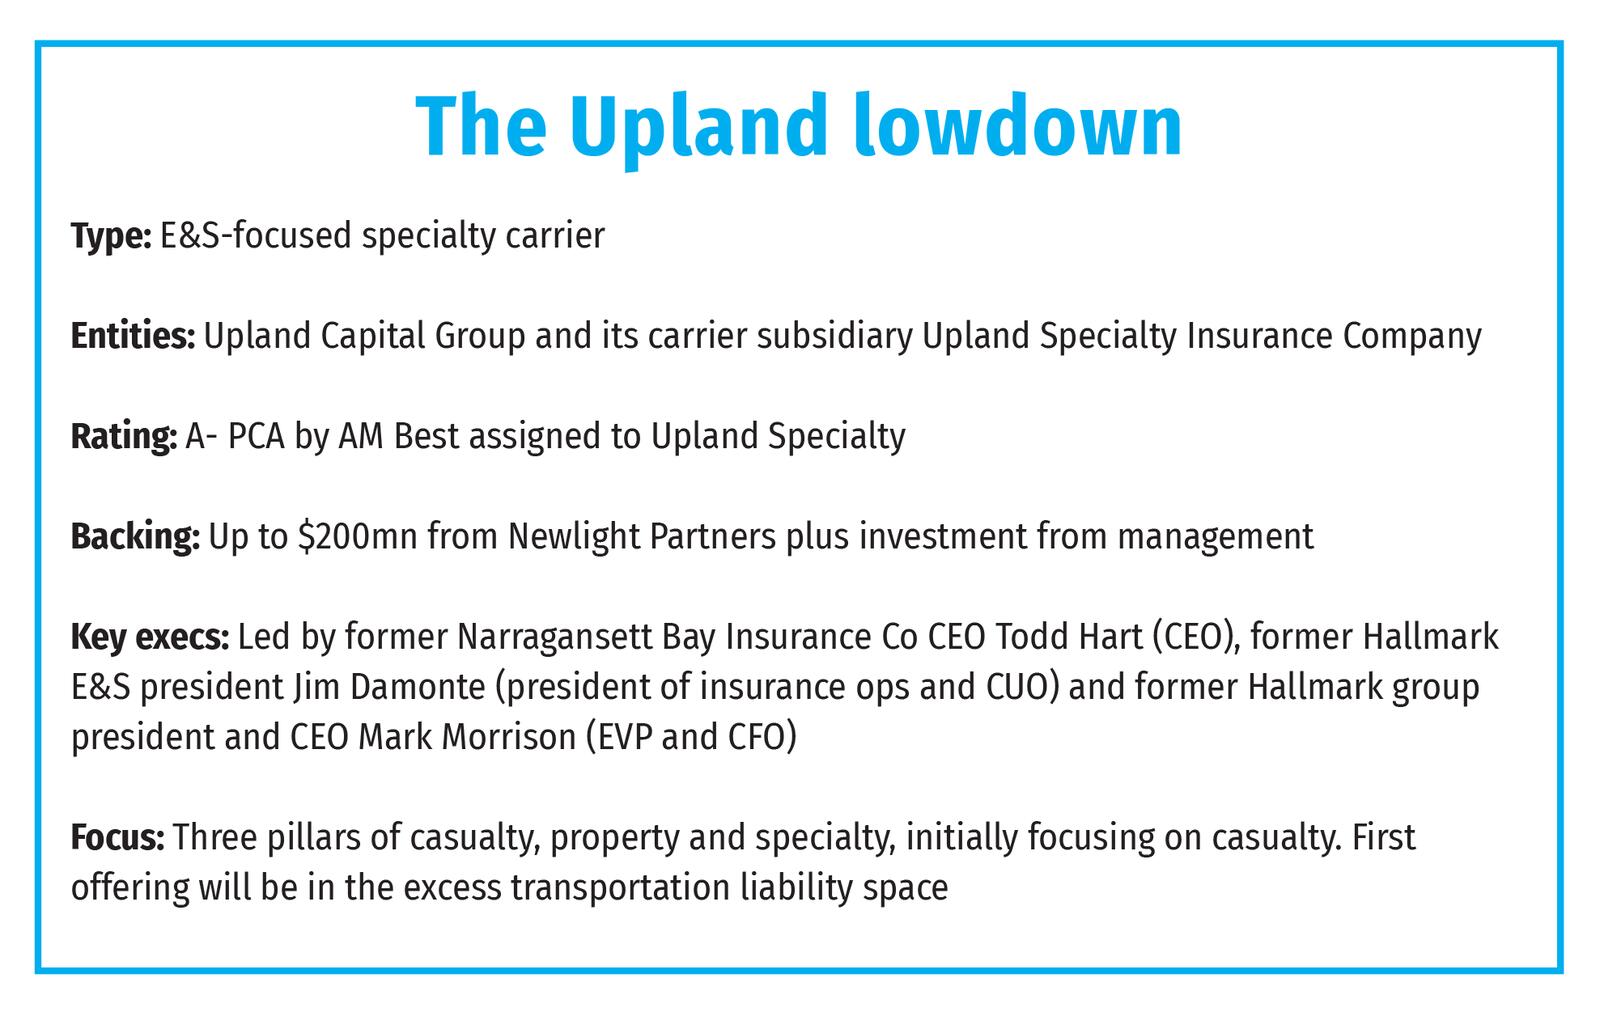 The Upland lowdown 